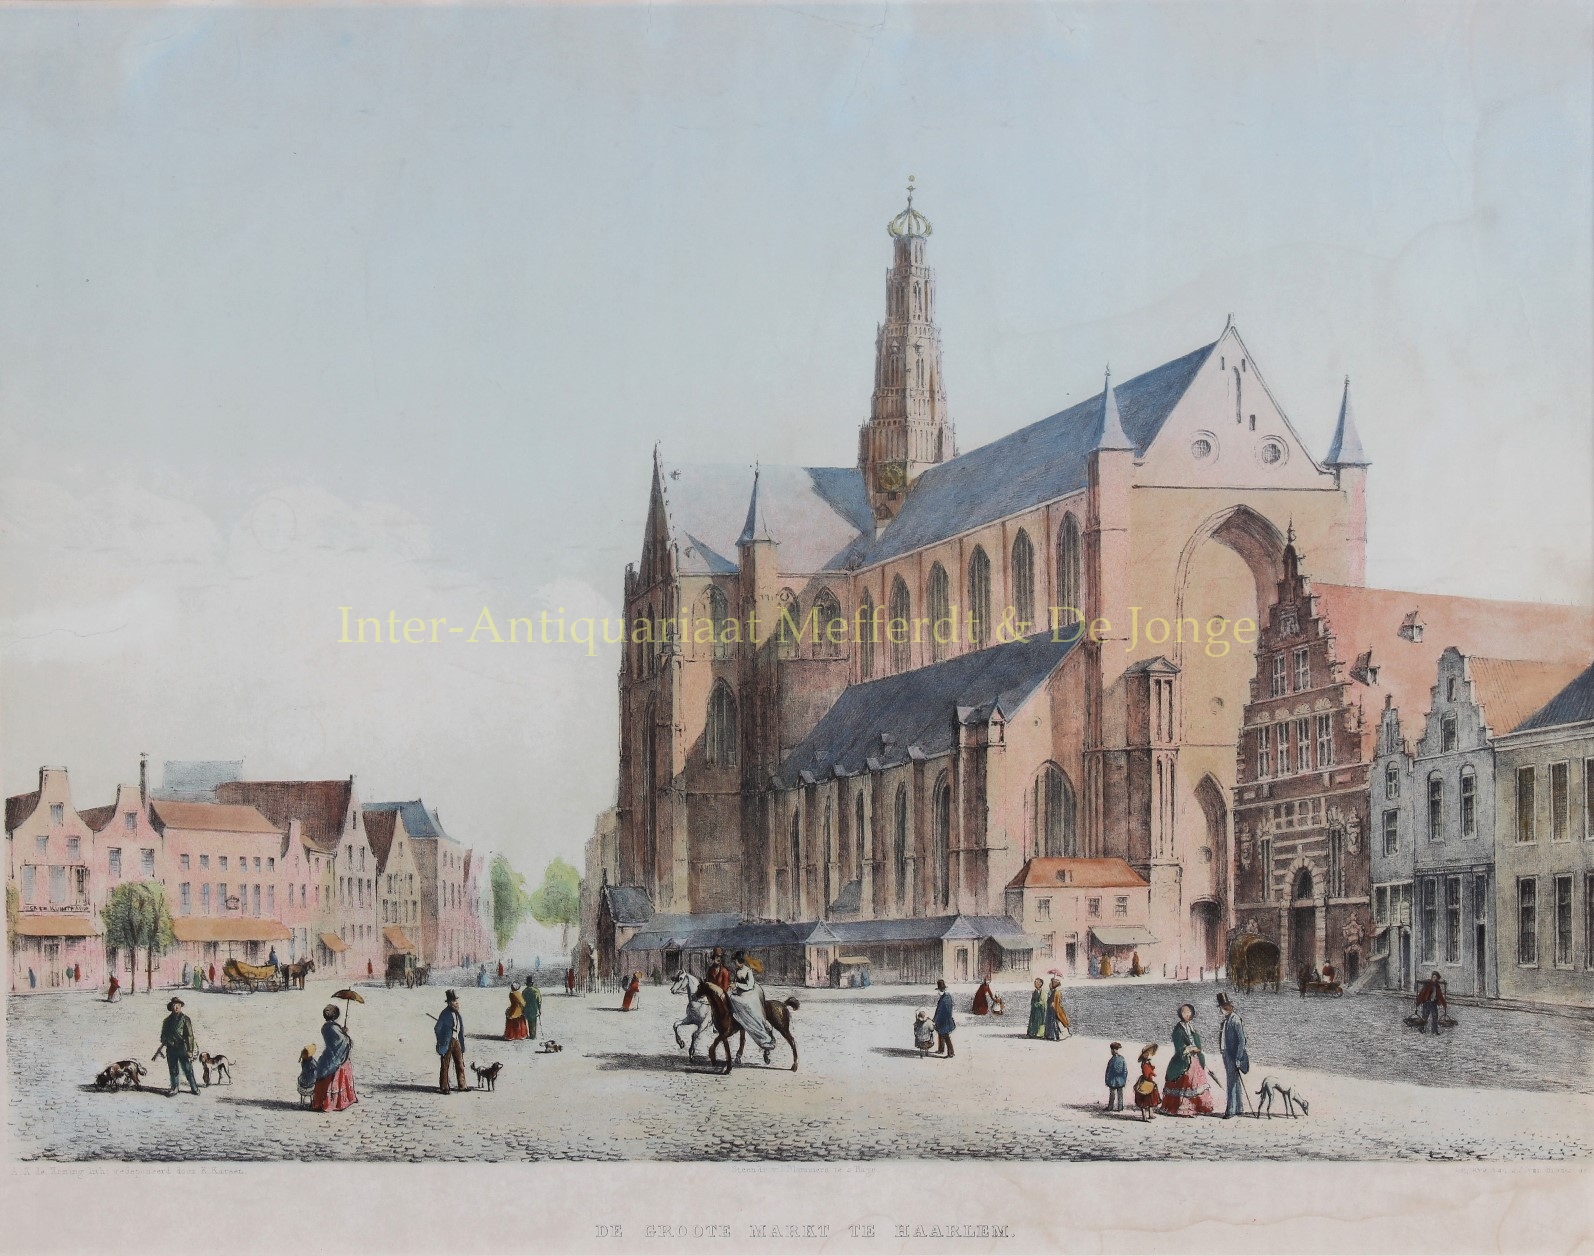  - Haarlem, Grote Markt - A.K. de Koning, ca. 1850